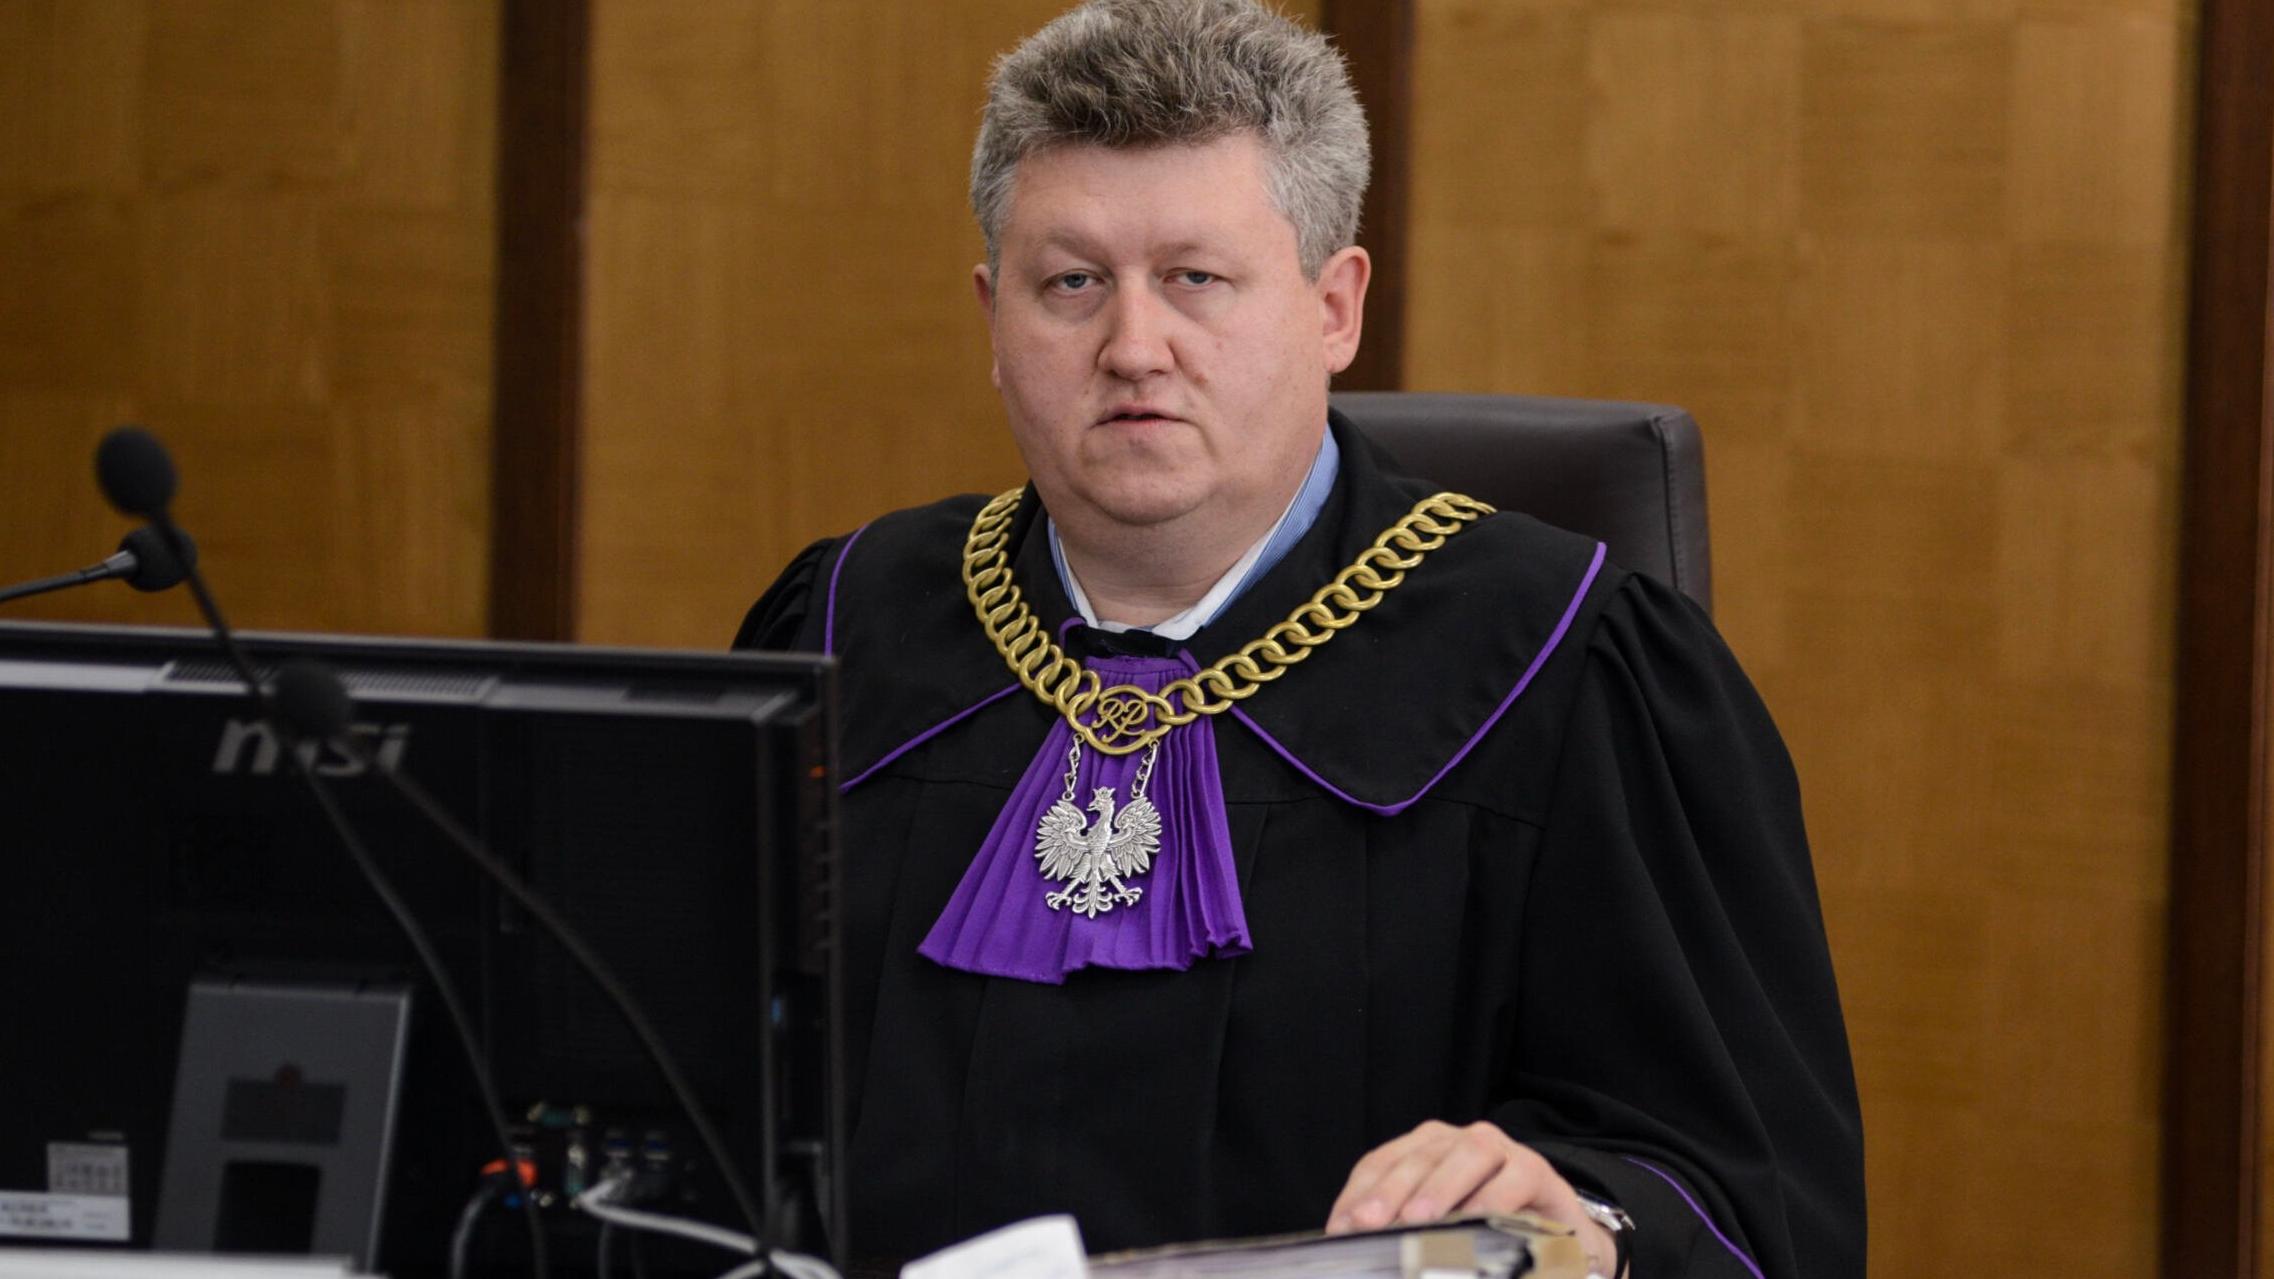 sędzia Krzysztof Chmielewski w todze i z łańcuchem sędziowskim prowadzi rozprawę w sądzie